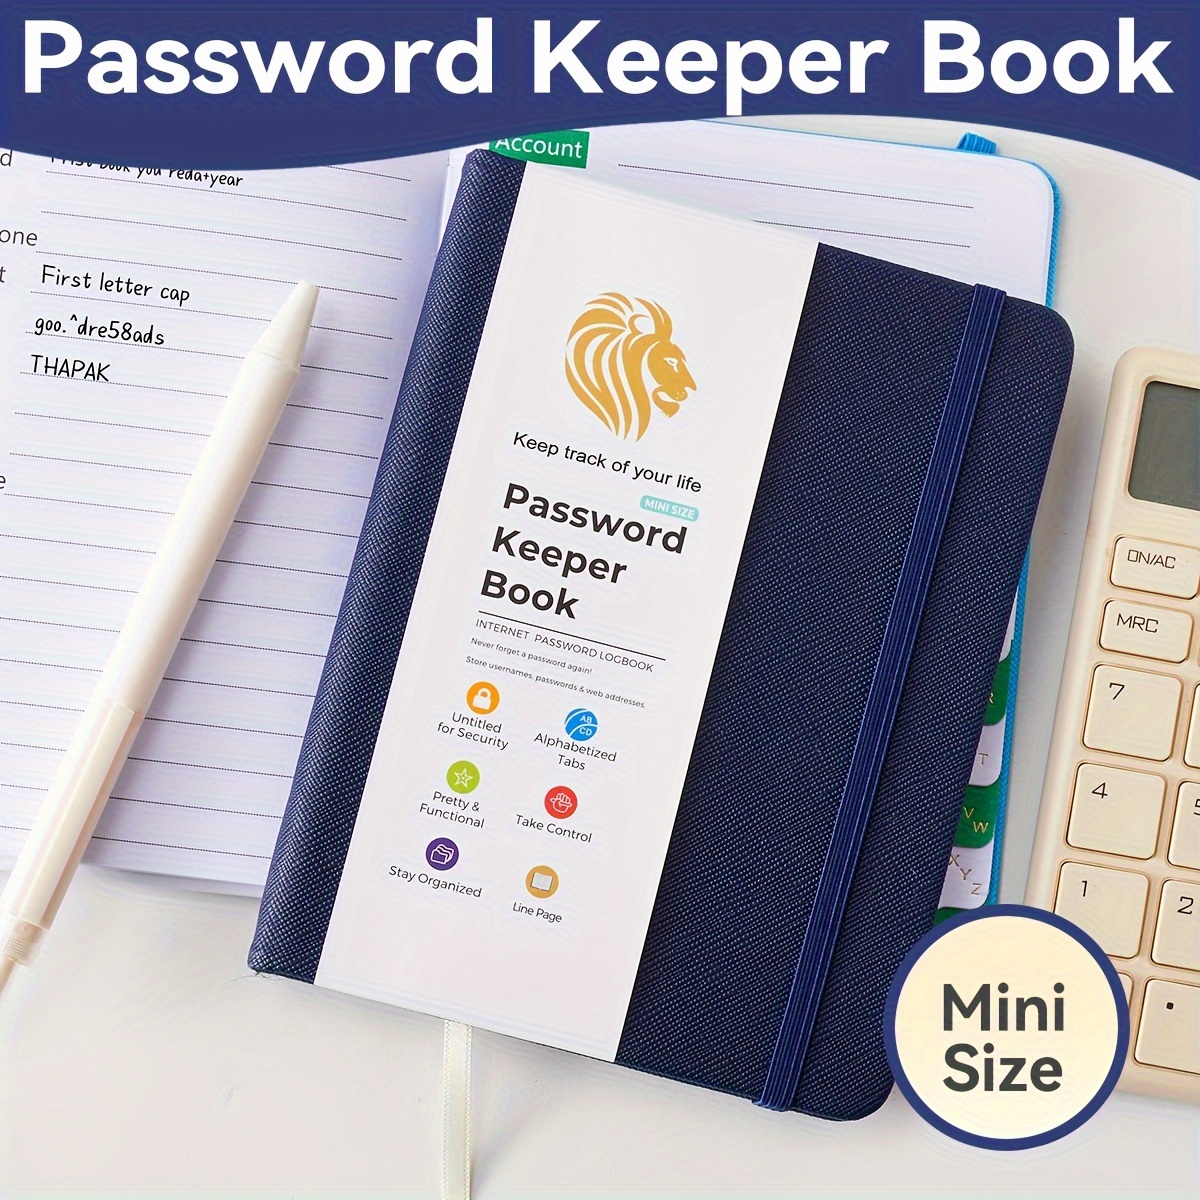 Libro di password - A-Z tabbed Notebook per Internet Login Information.Nero  Piccolo formato tascabile Password Keeper Journal Notebook per Computer &  Sito Web : : Libri